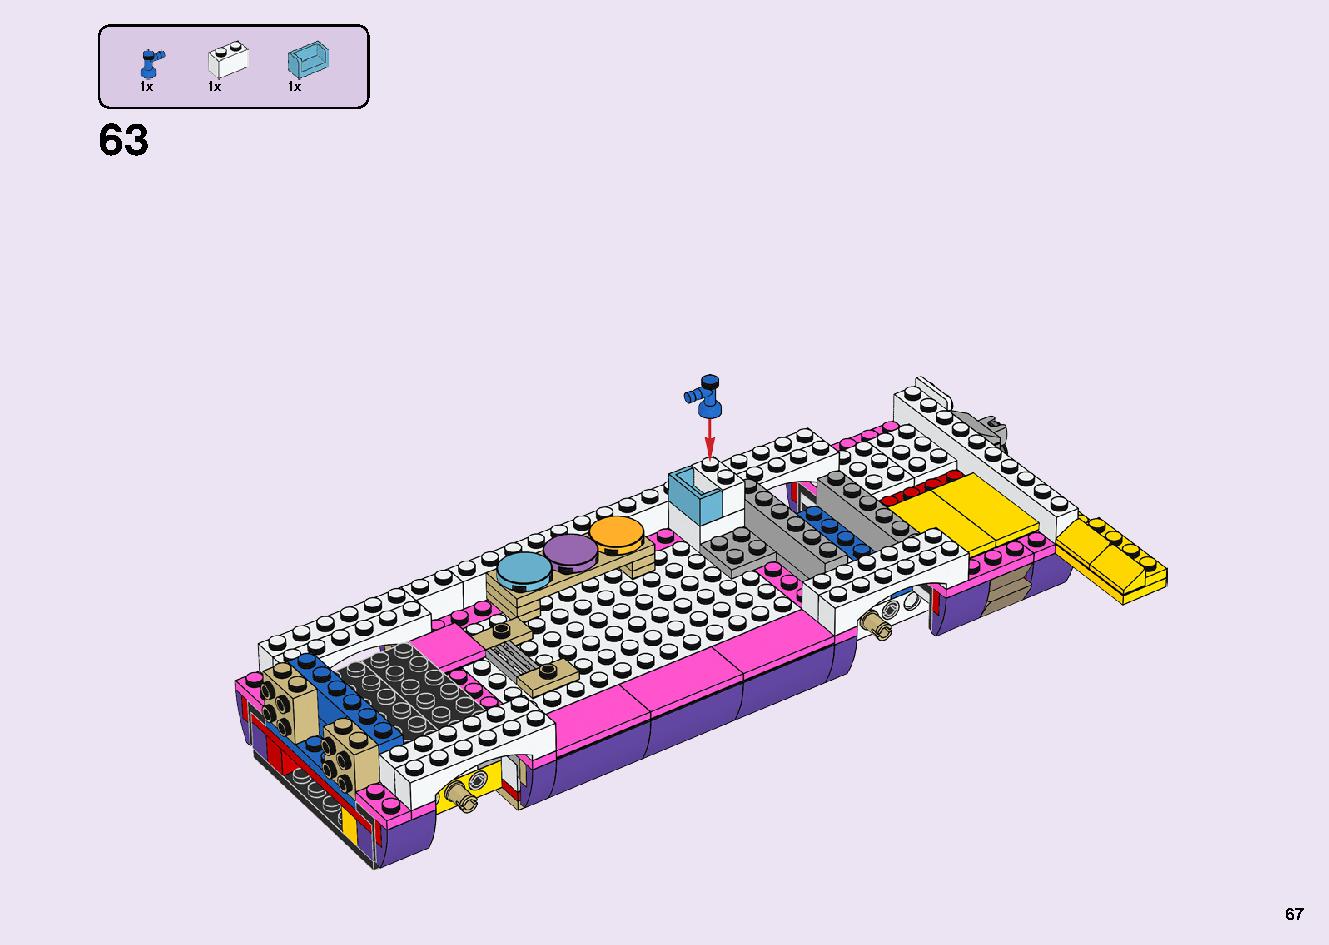 フレンズのうきうきハッピー・バス 41395 レゴの商品情報 レゴの説明書・組立方法 67 page